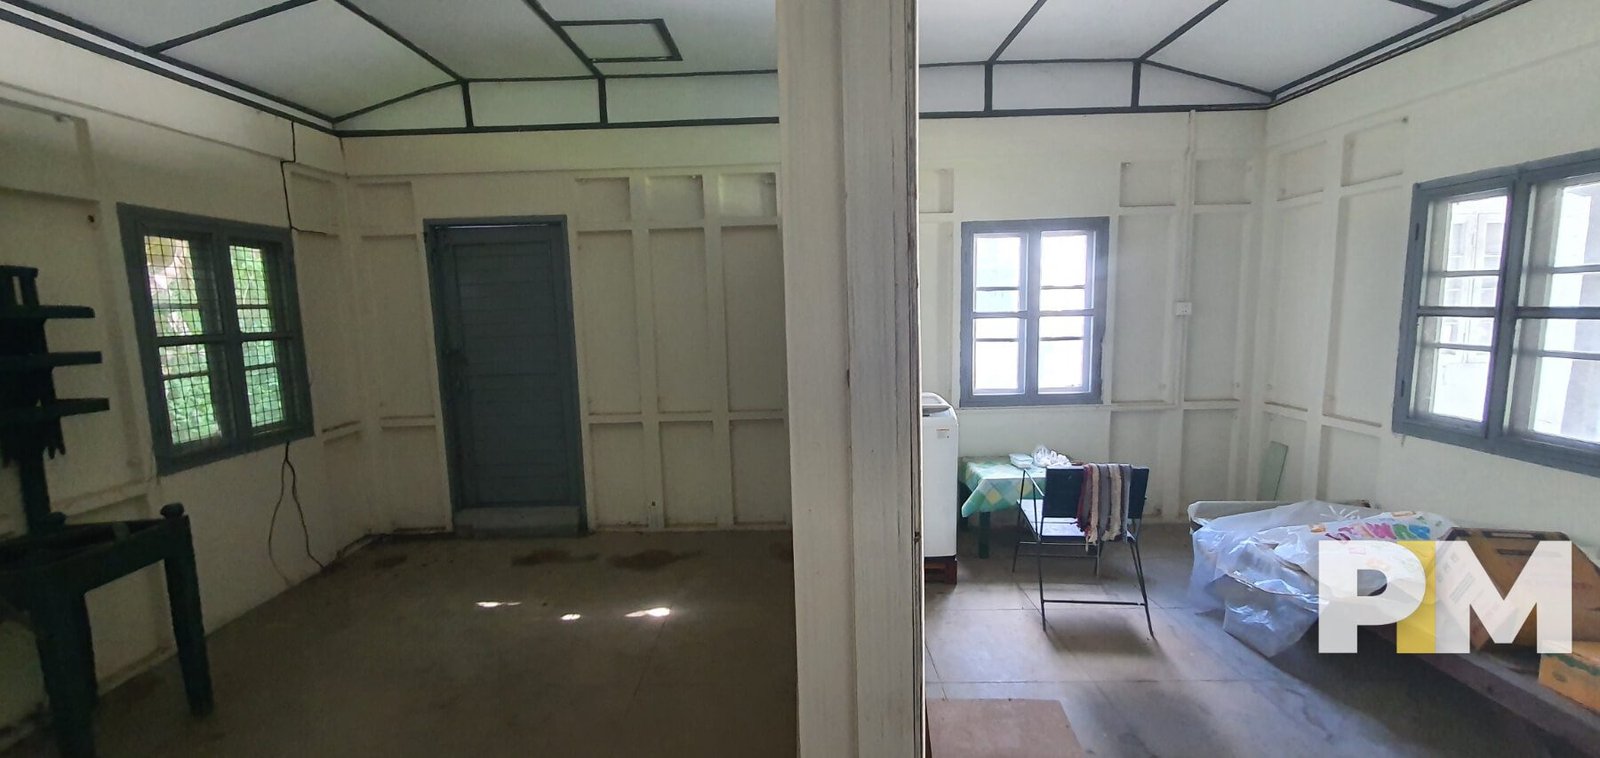 Room view - Yangon Real Estate (2)